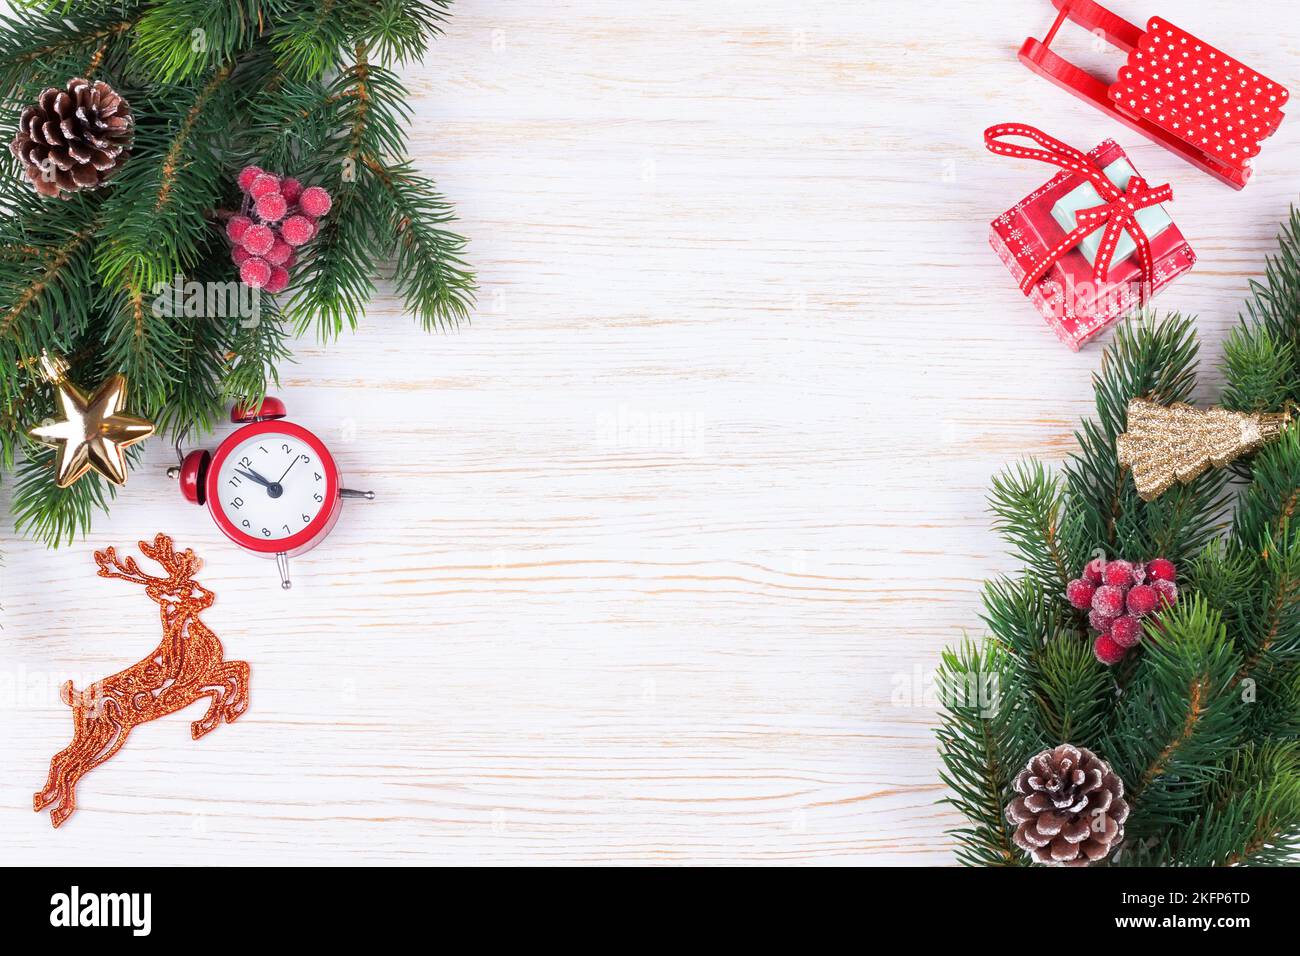 Weihnachten und Neujahr Komposition. Weihnachtsschmuck, Tannenzweig, Girlande, roter weihnachtsmann Hut, Uhr, Geschenk auf weißem Holzhintergrund. Flach Stockfoto